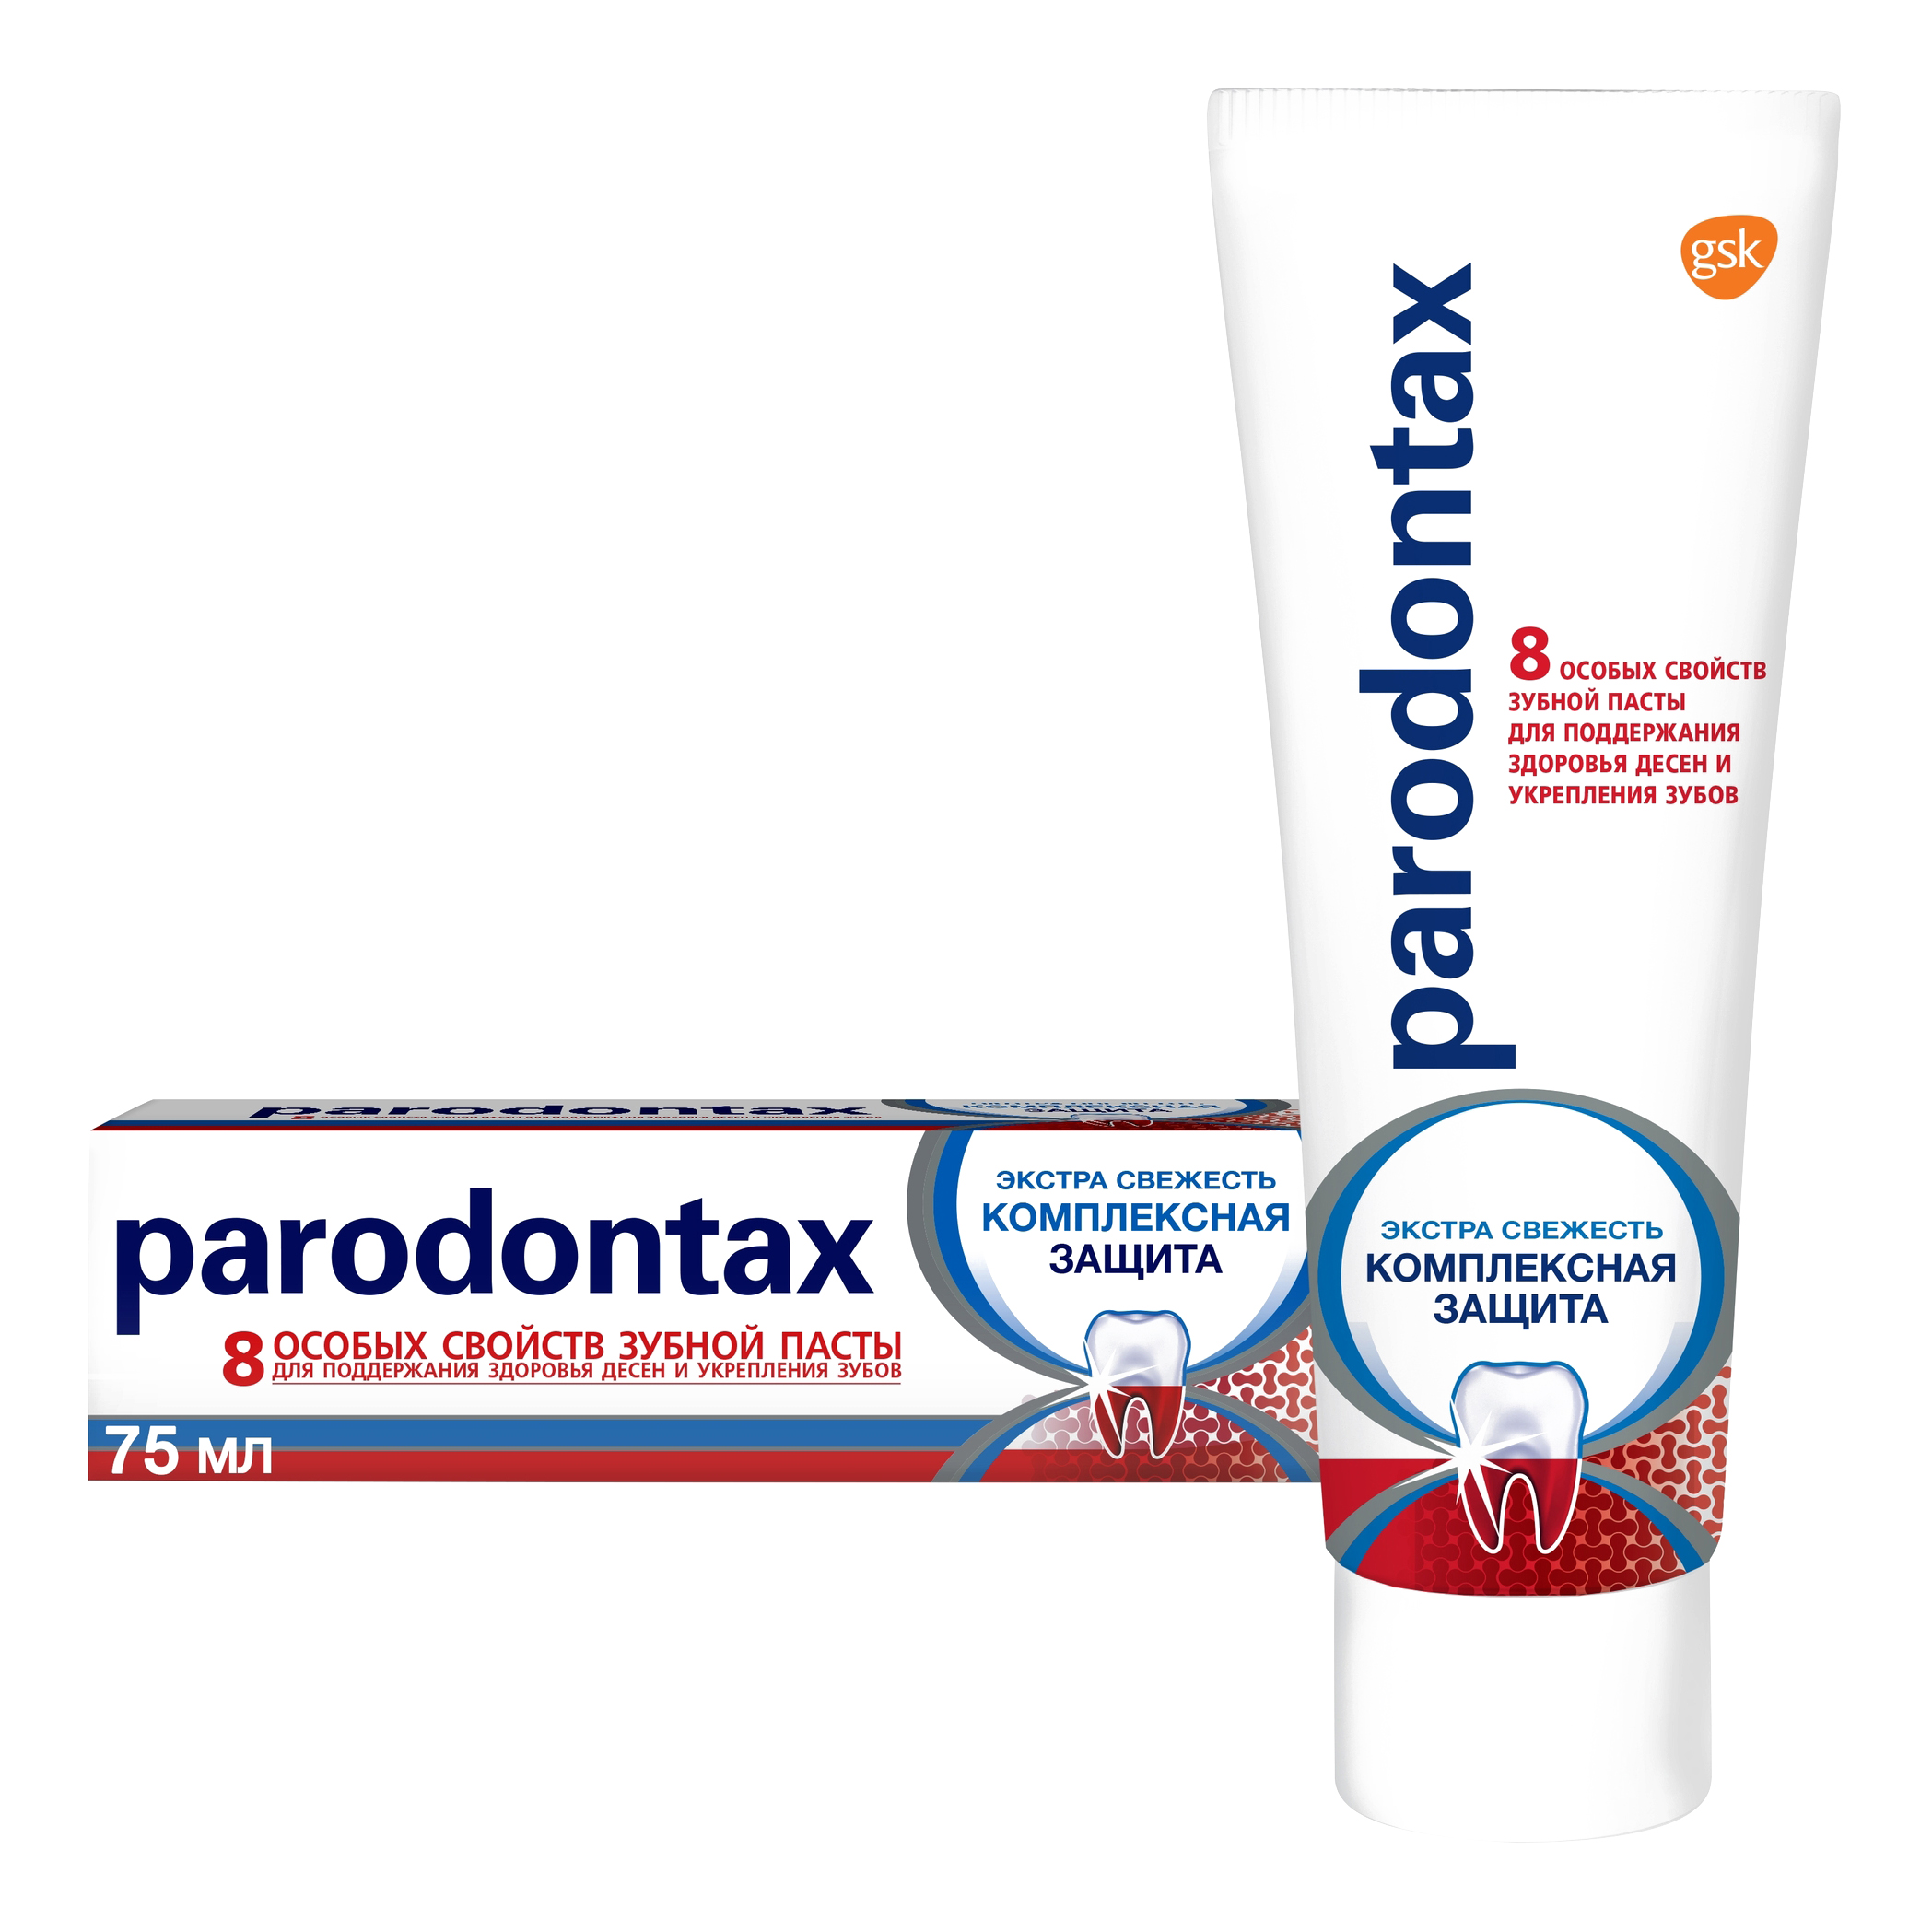 Зубная паста parodontax Комплексная Защита от воспаления и кровоточивости десен с фтором, 75 мл истоптанная русь